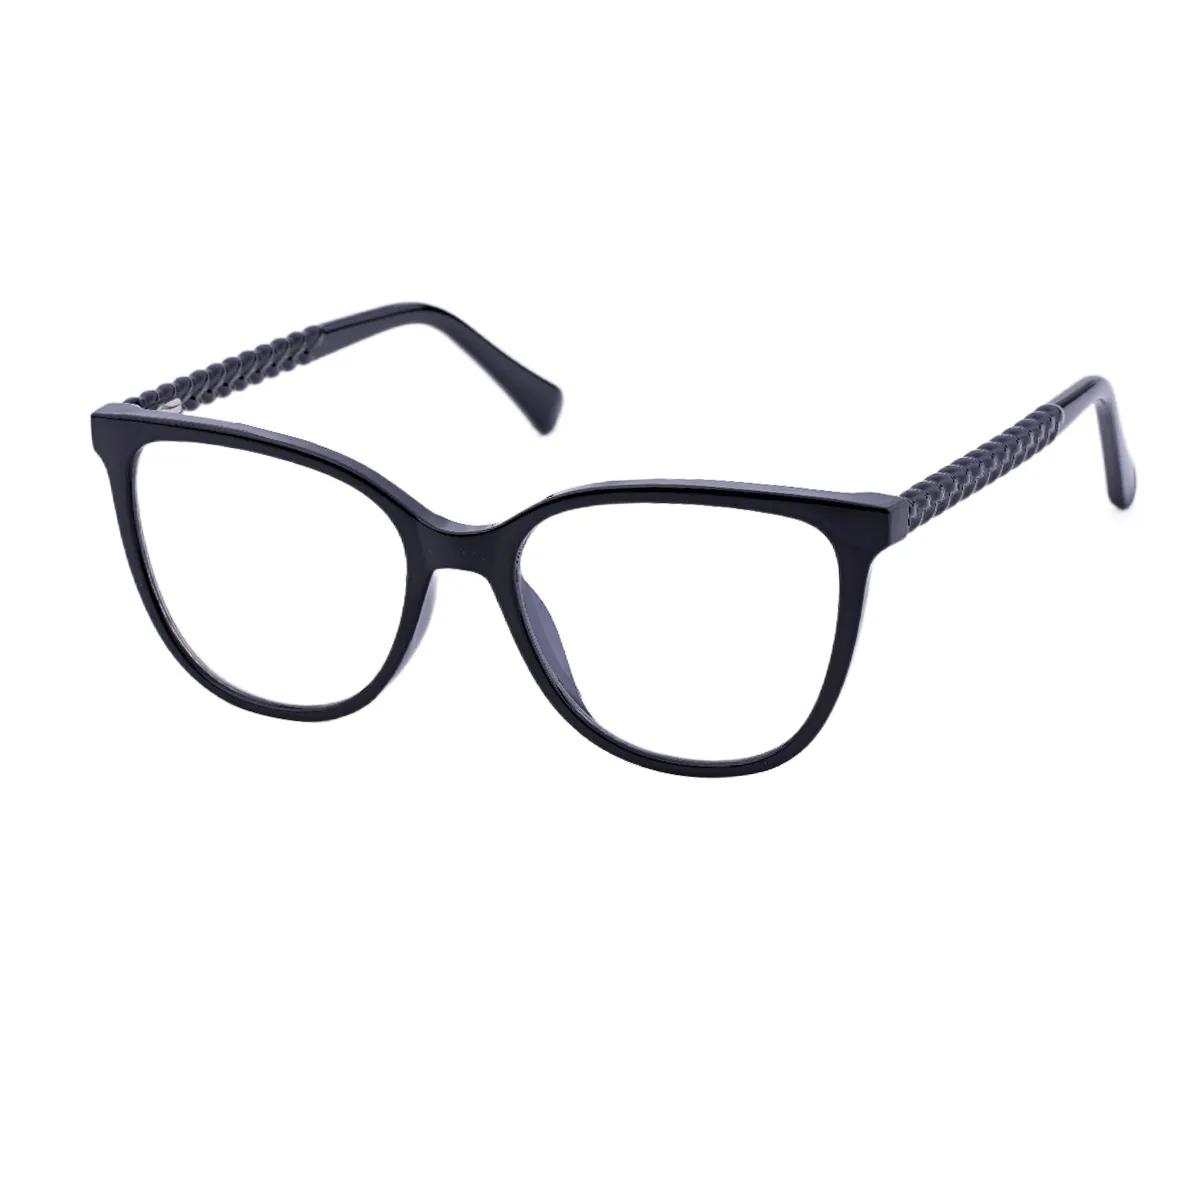 Fashion Cat-eye Tortoiseshell Glasses for Women